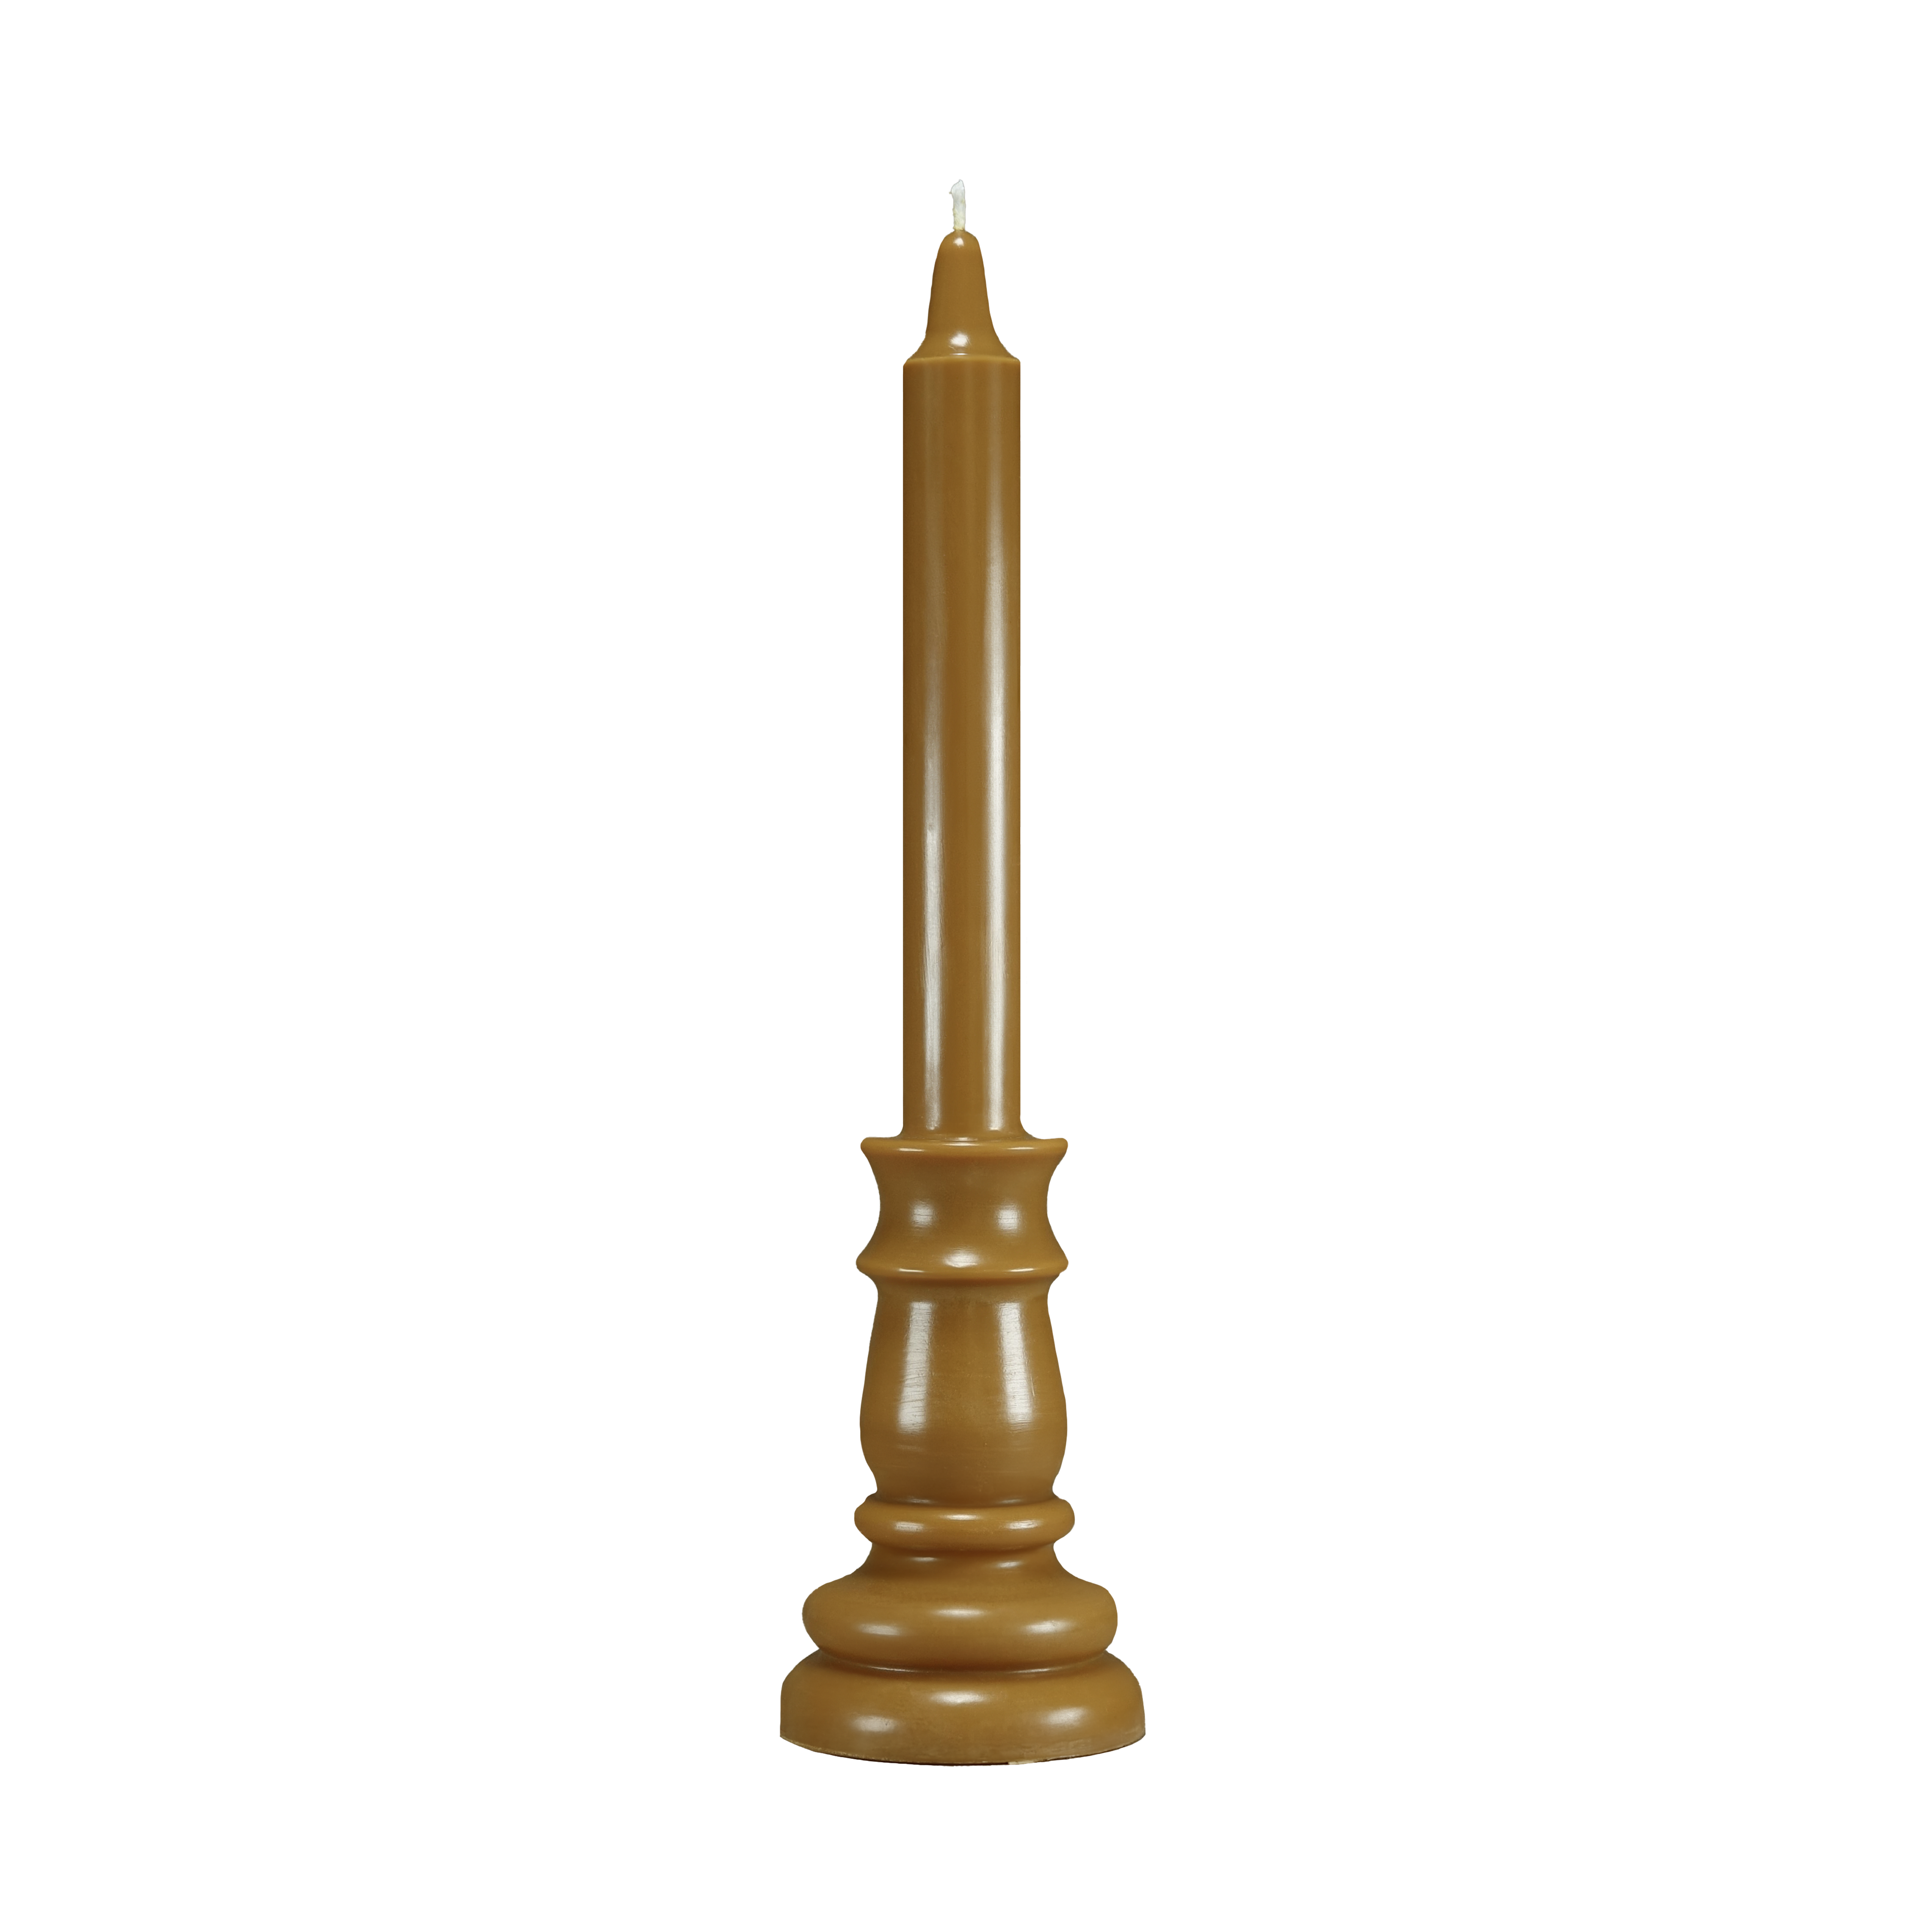 Photographie d'un cierge parfumé en cire de colza de couleur marron cannelle, avec sa mèche en coton, fabriqué à la main par Anthèse Manufacture. Nom du produit: Bois d’agar